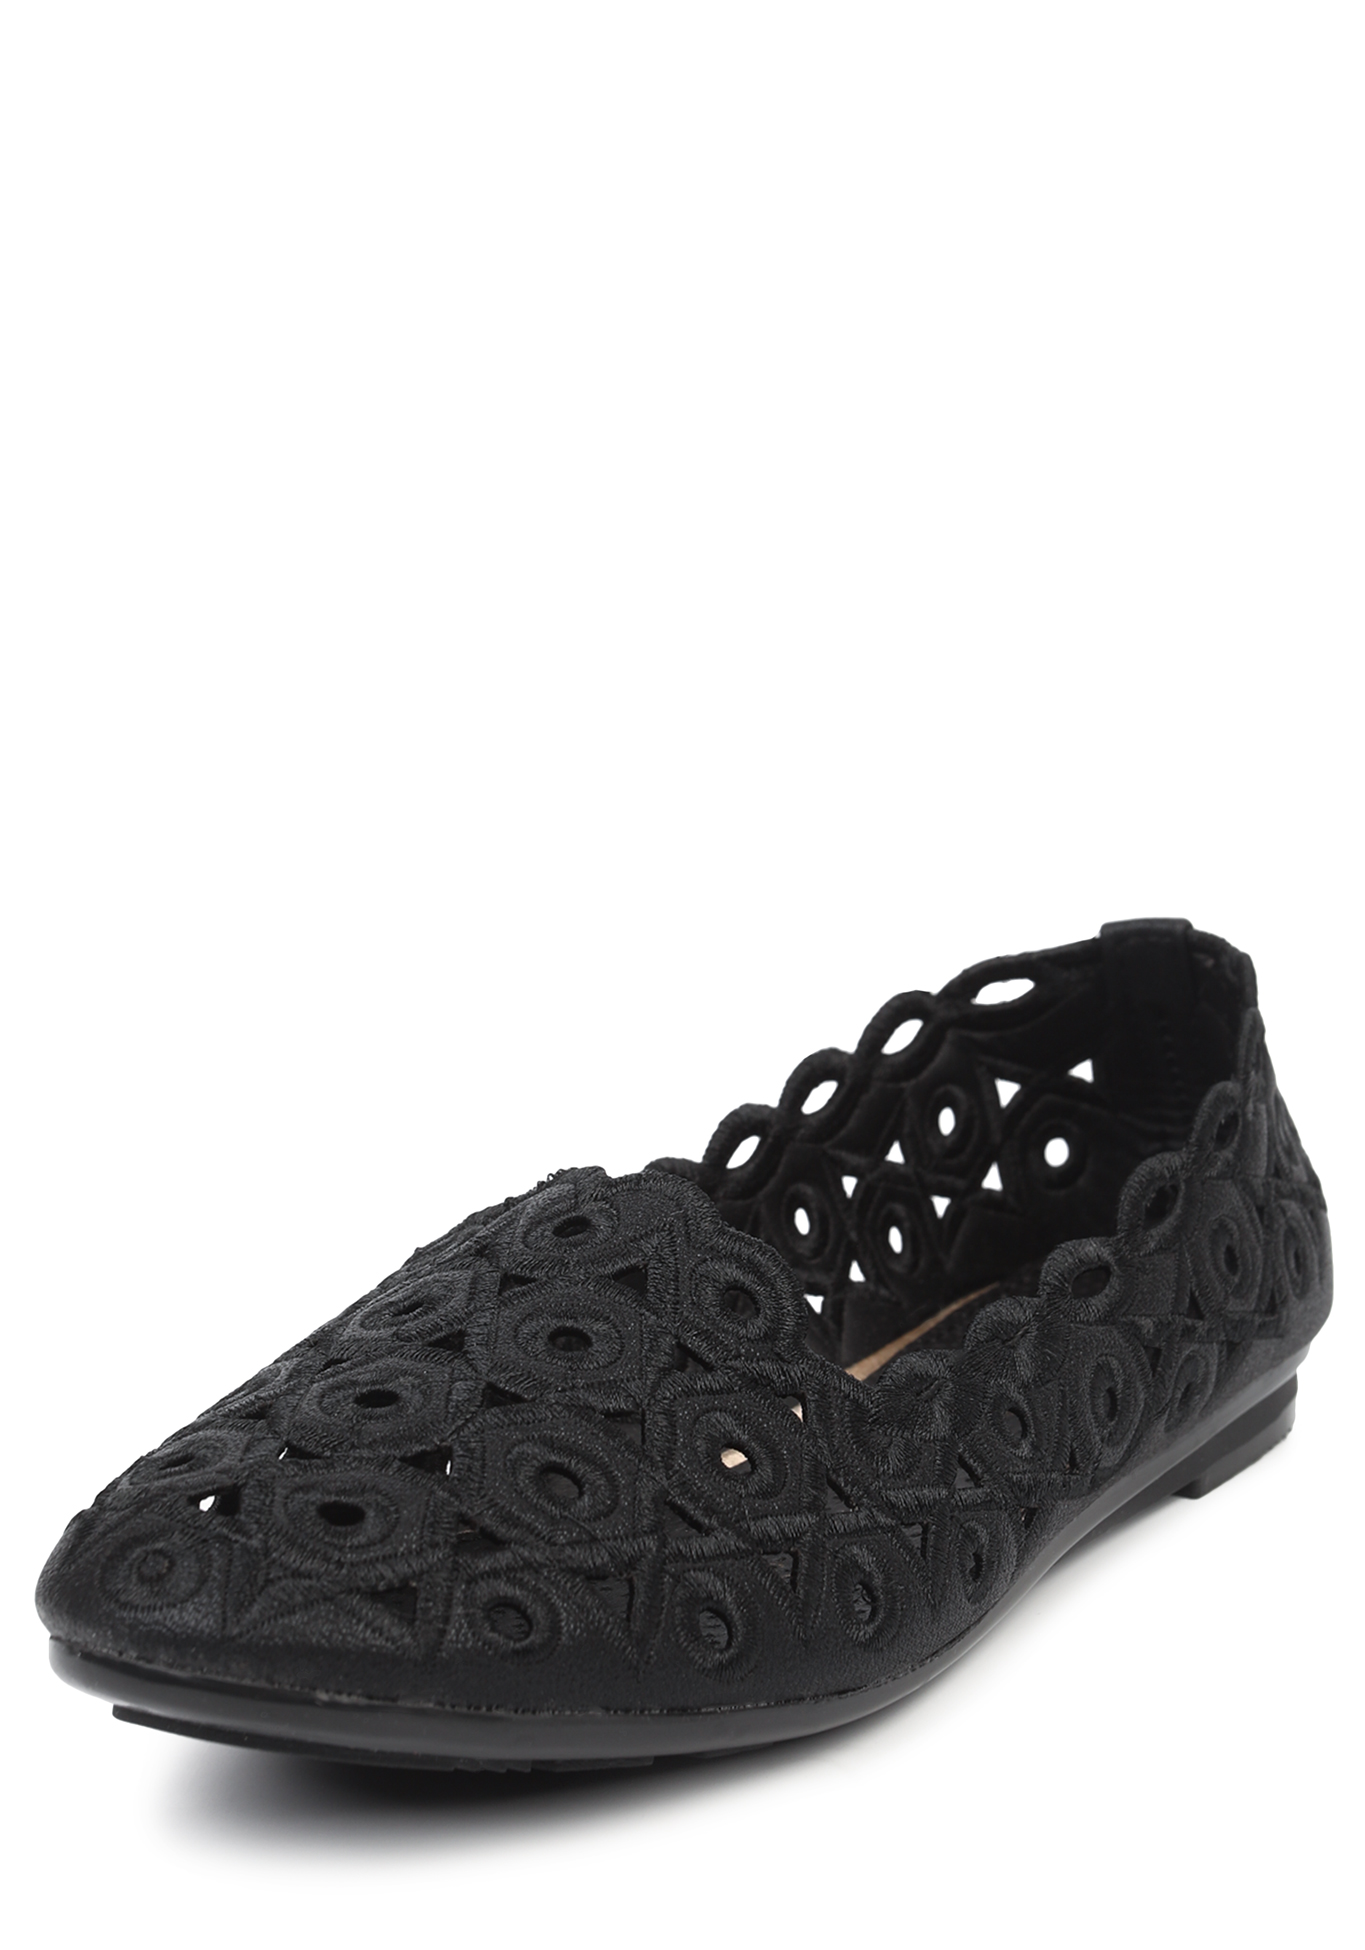 Туфли летние женские "Ассита" Вера.G, размер 36, цвет черный - фото 1